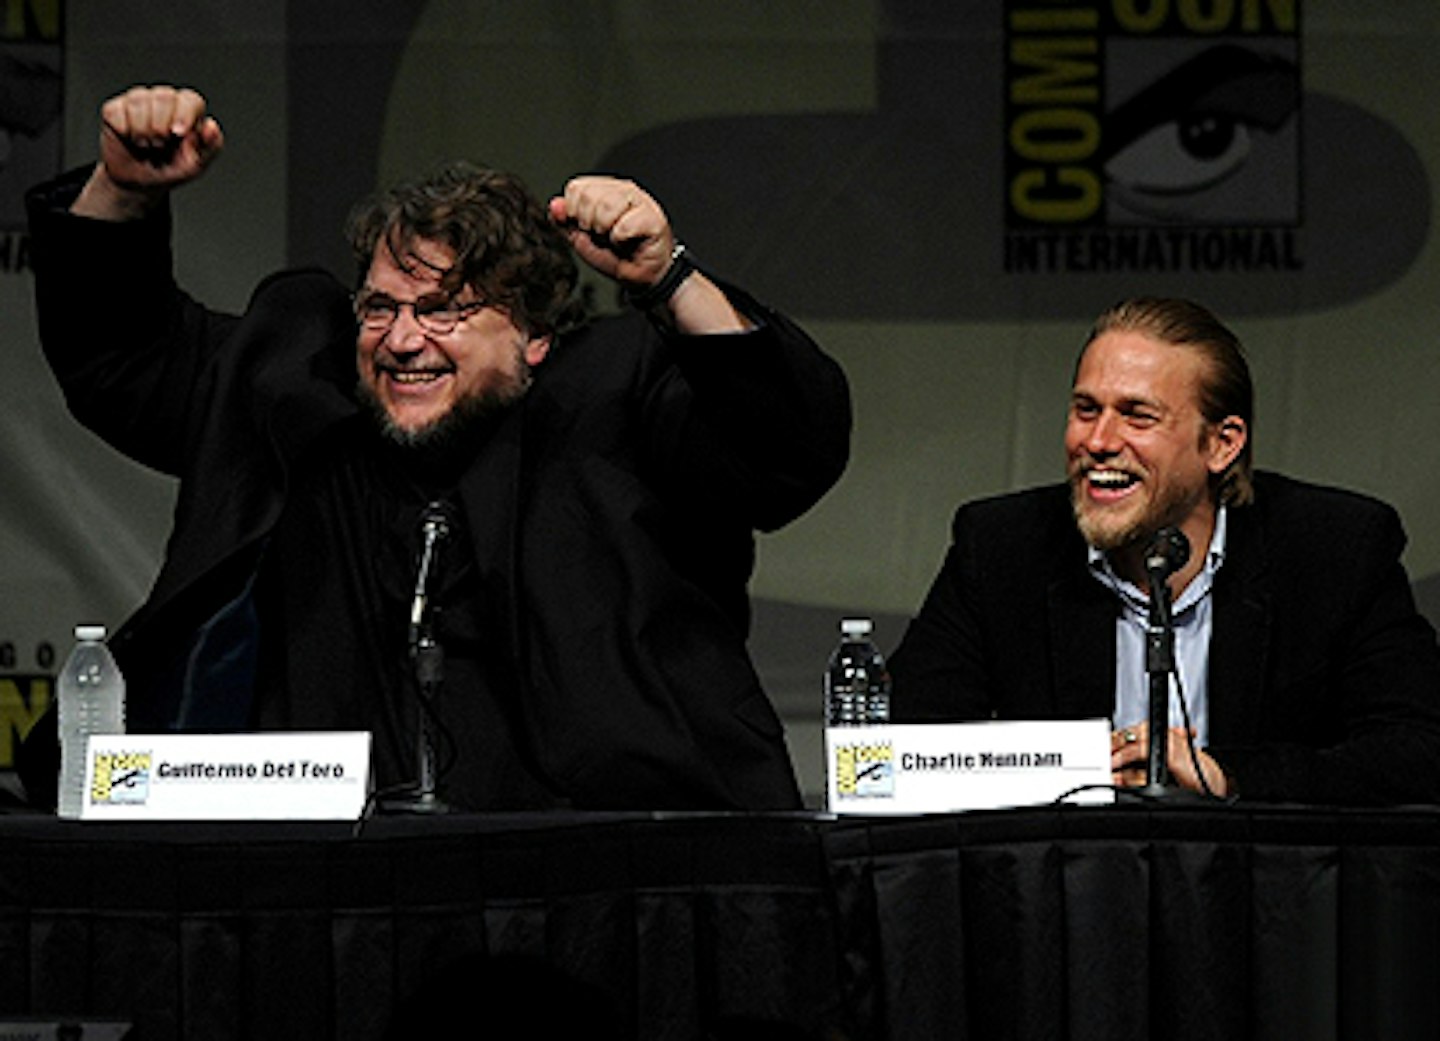 Guillermo del Toro and Charlie Hunnam at Comic Con